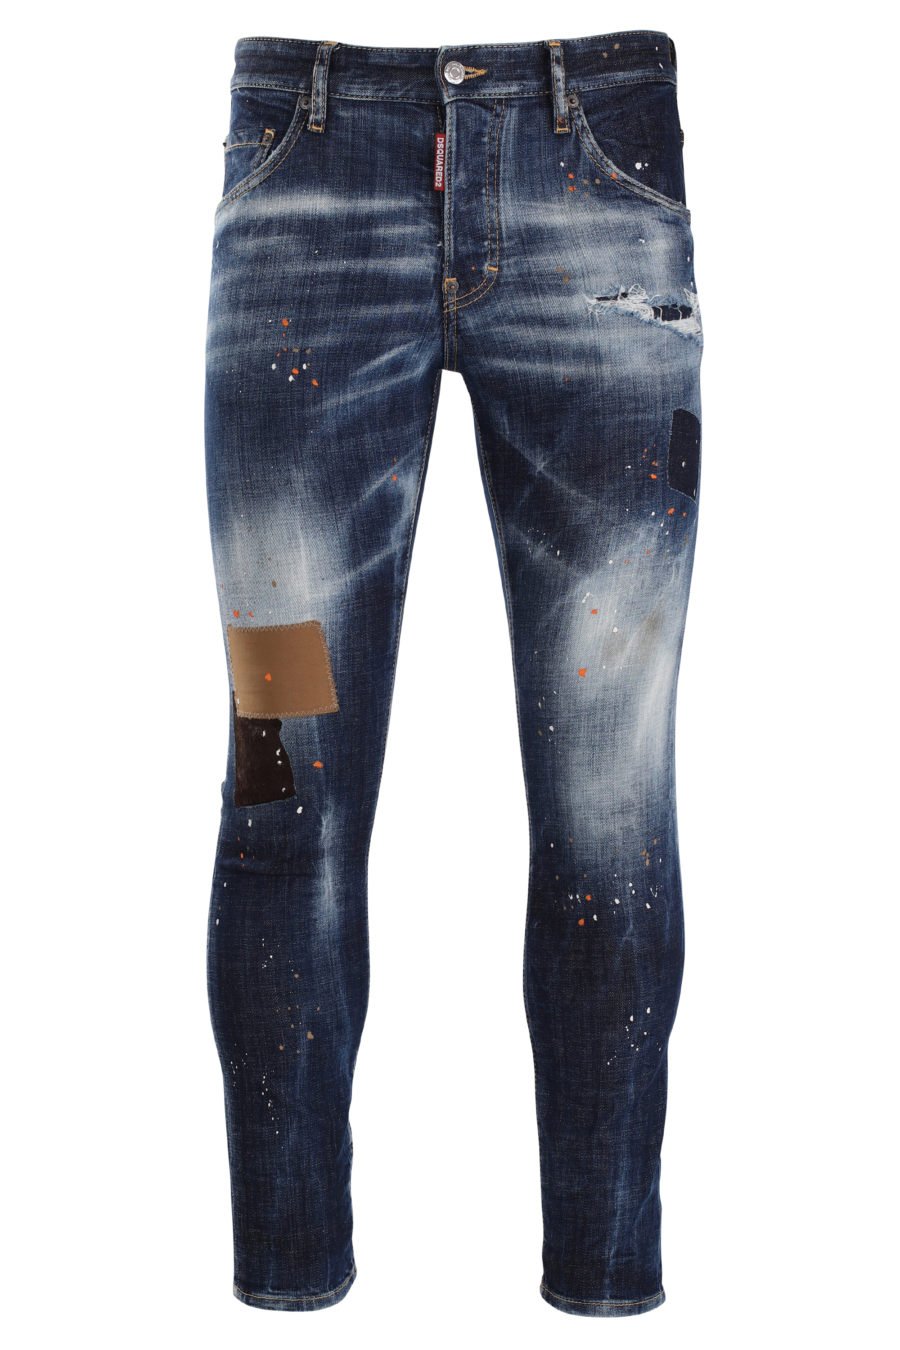 Pantalón vaquero "skater" azul desgastado con parches marrón - IMG 0008